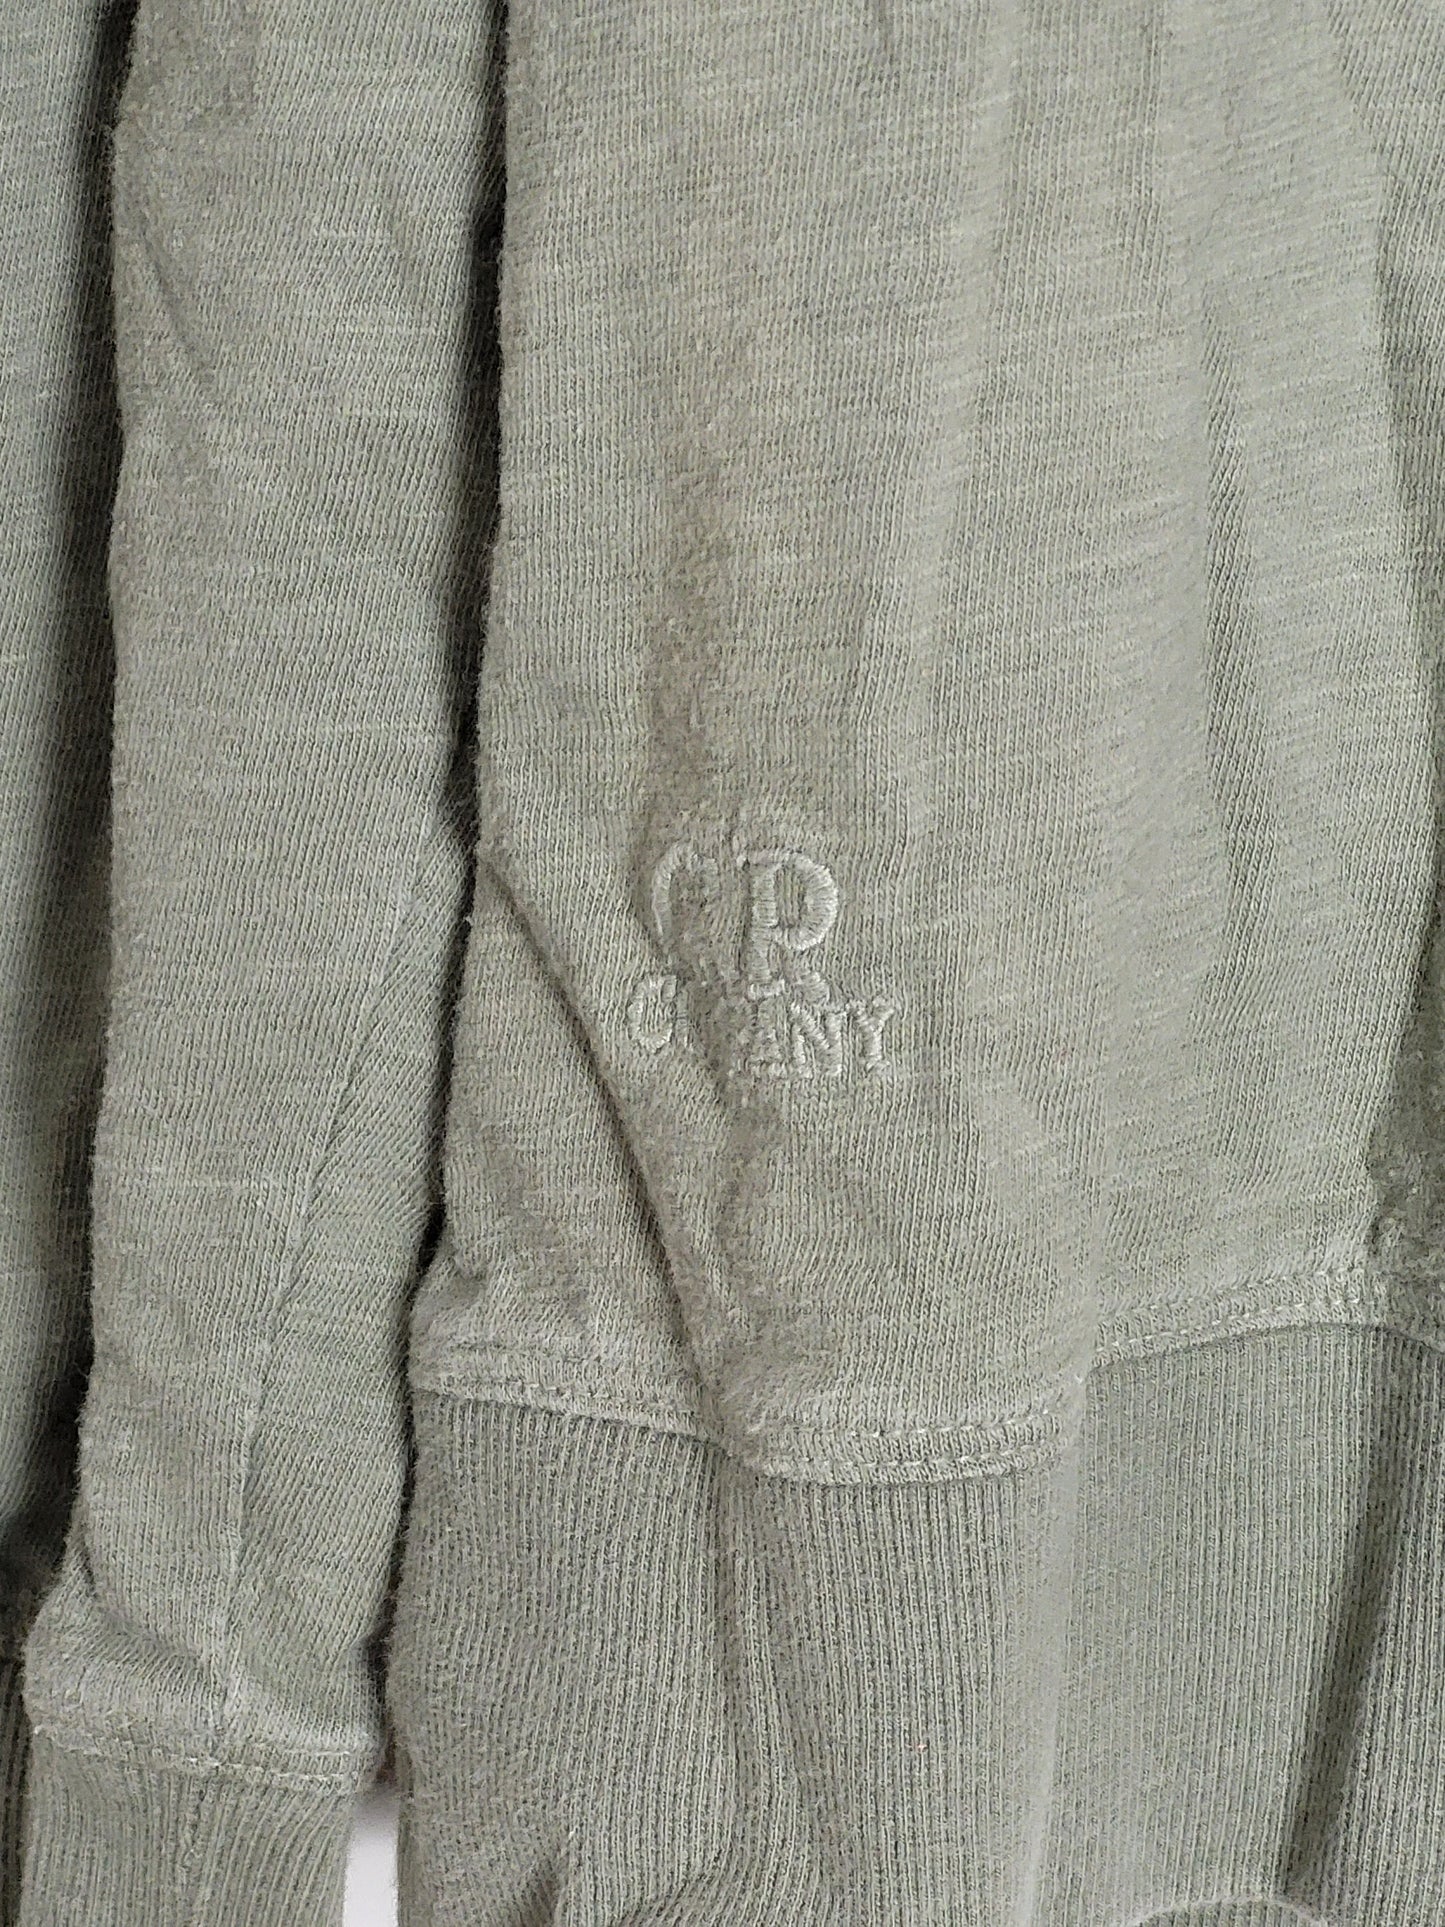 C.P. COMPANY - Vintage Pullover - Klassisch mit Tasche - Oliv - Herren - L